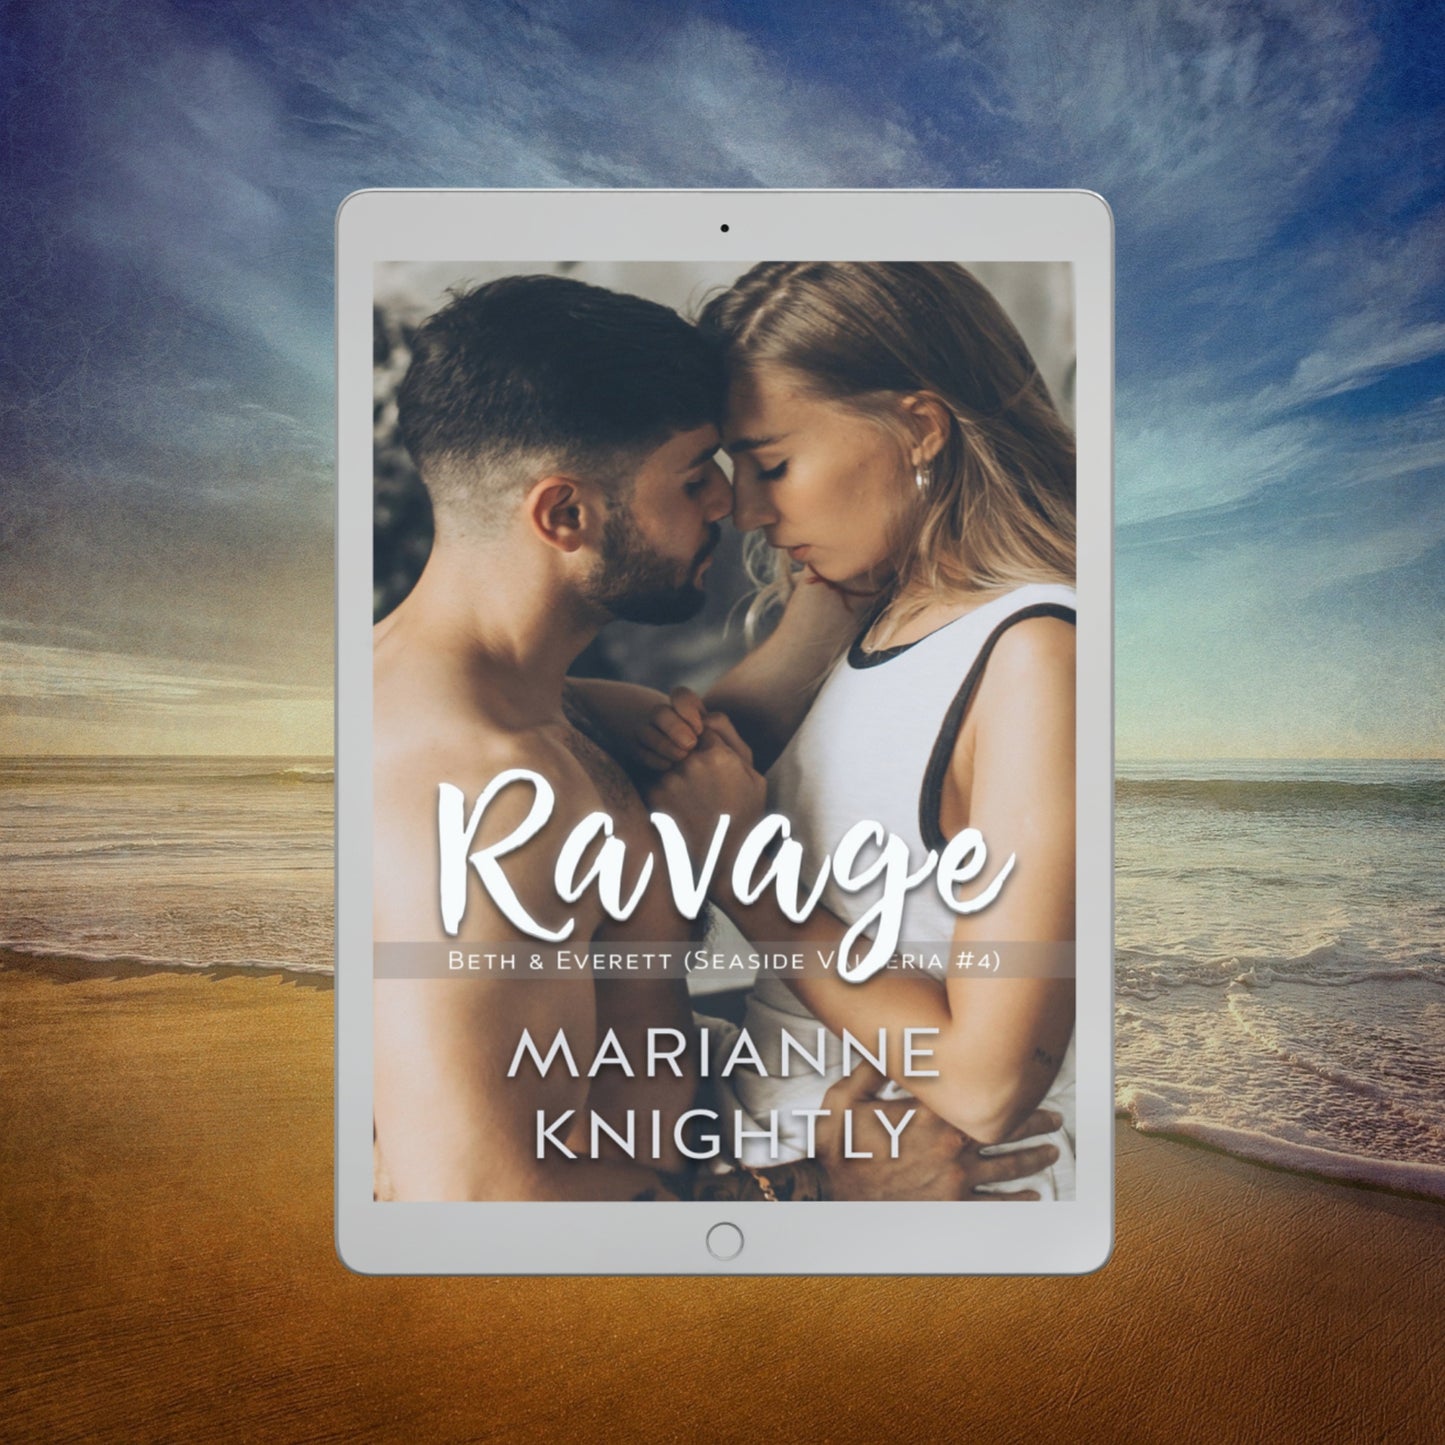 Ravage (Beth & Everett) (Seaside Valleria 4) EBOOK